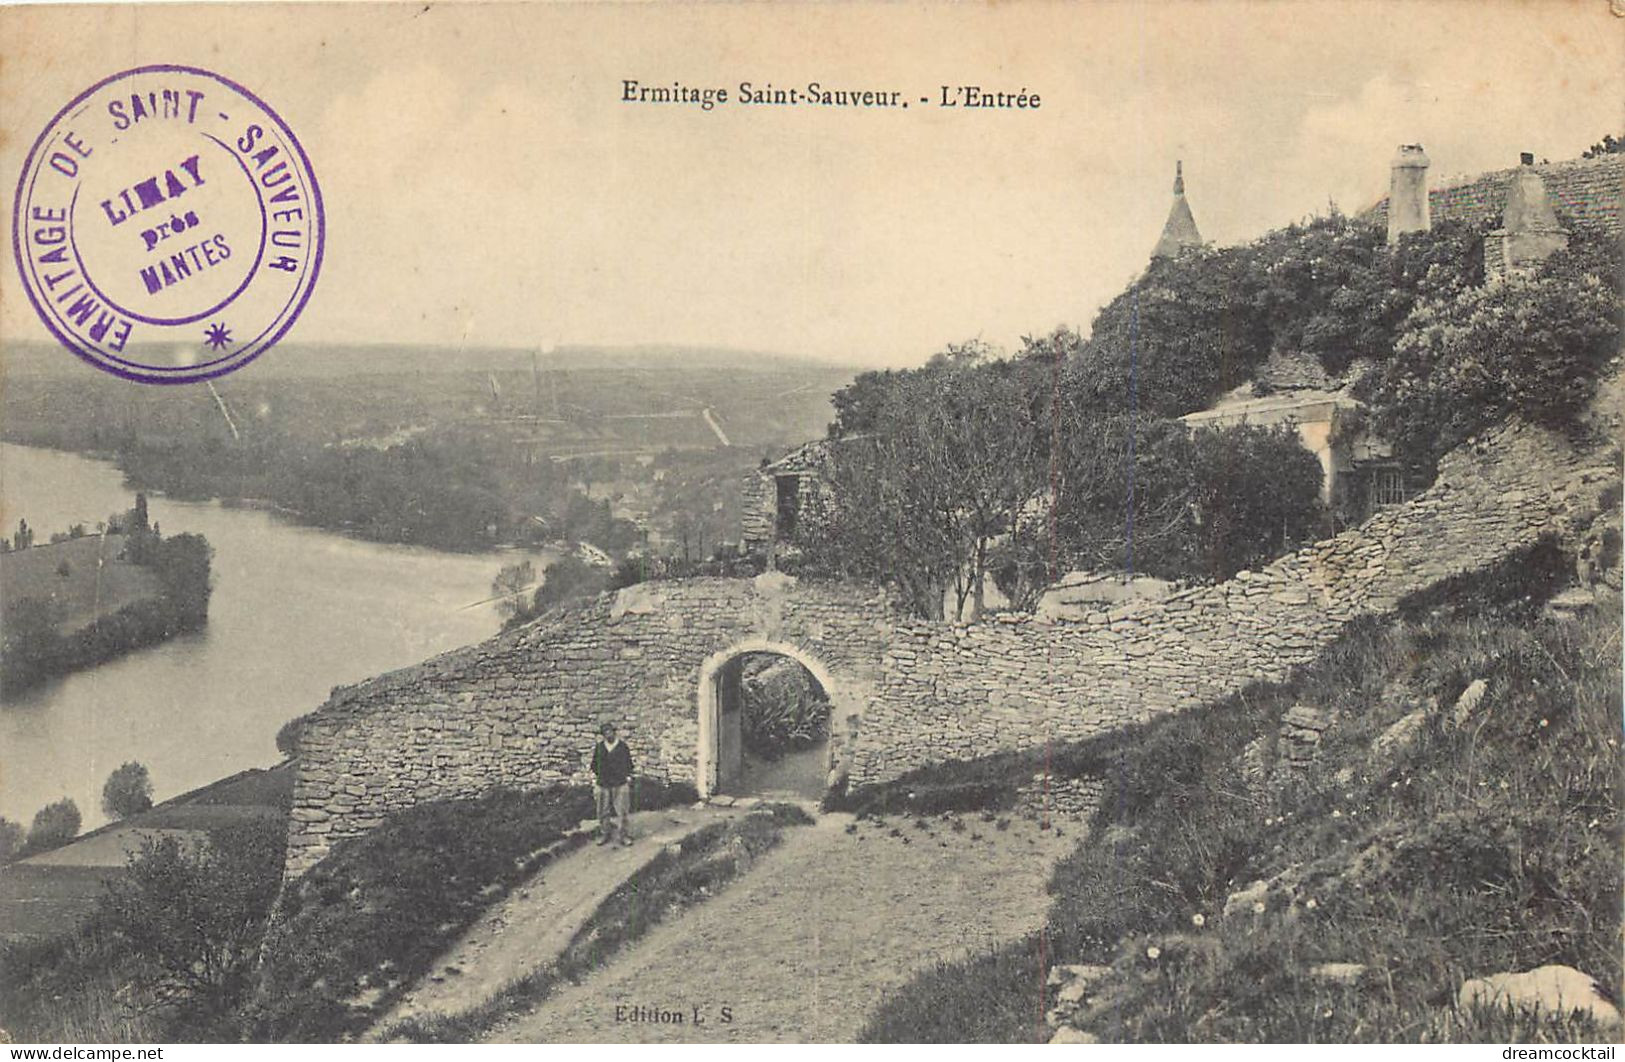 (S) Superbe LOT n°8 de 50 cartes postales anciennes France régionalisme